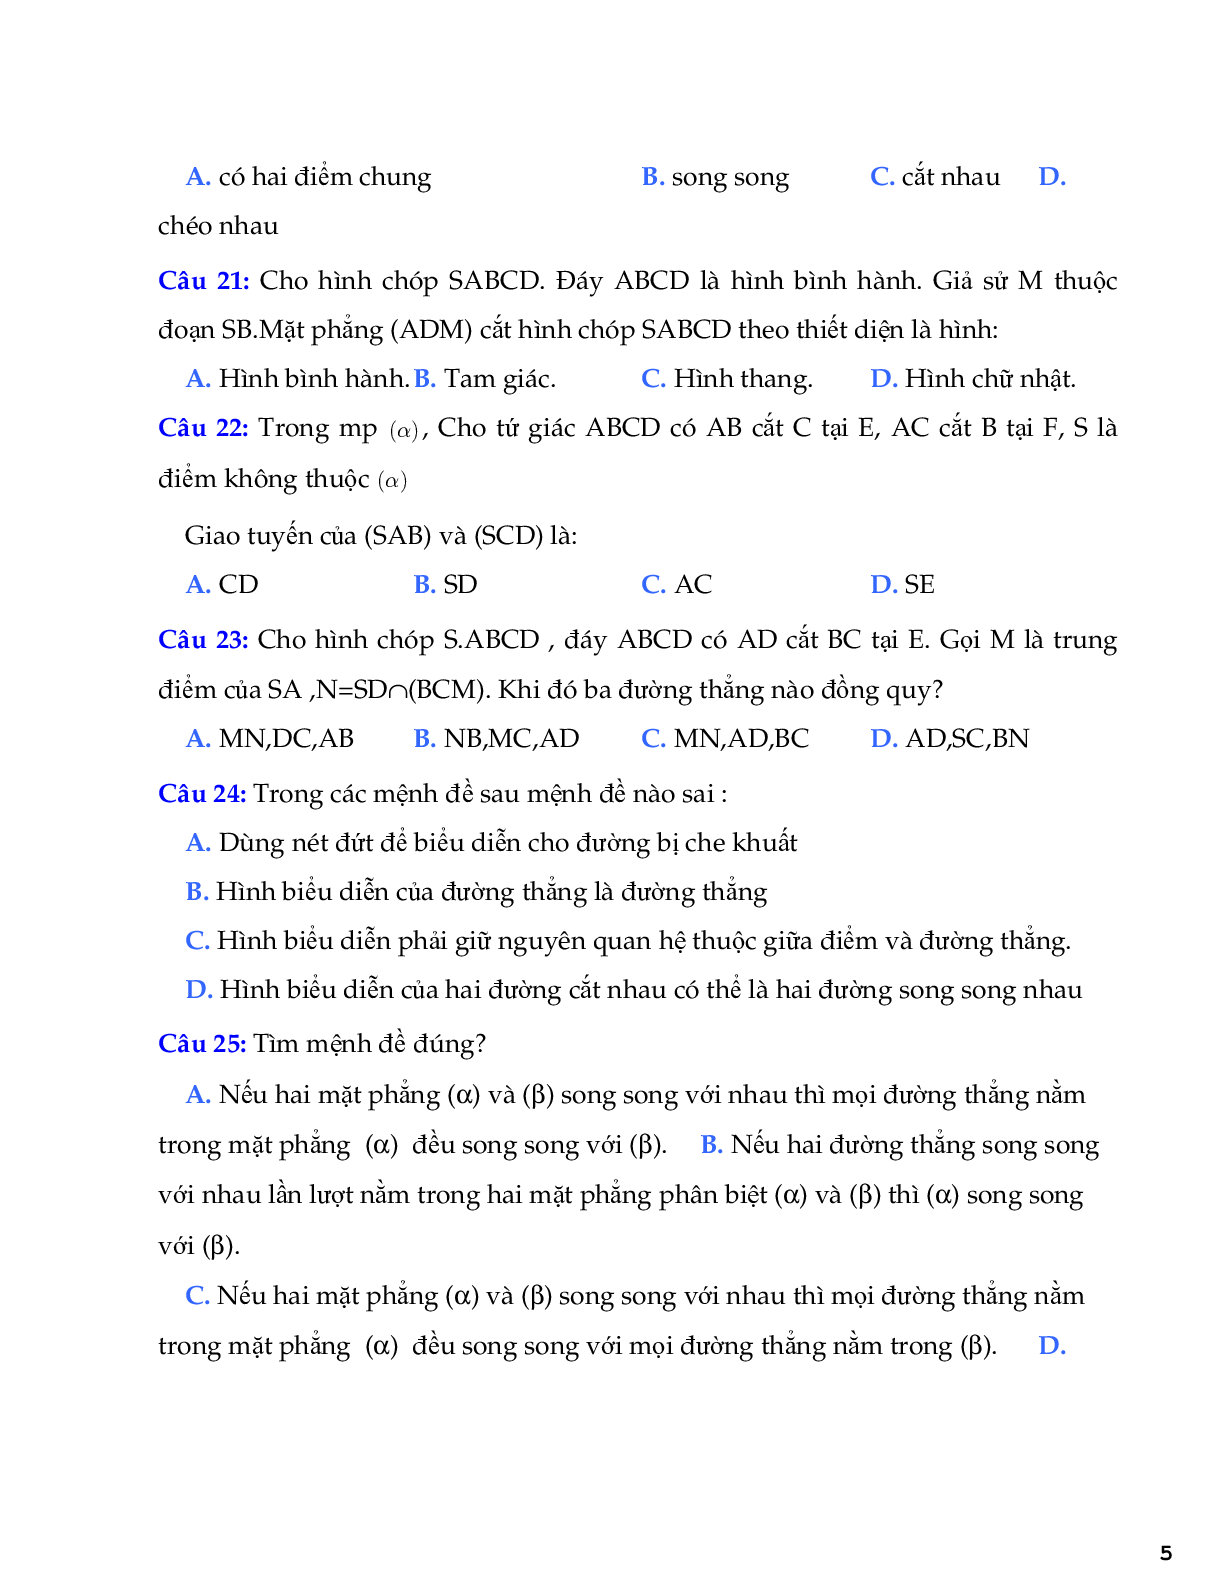 121 bài tập trắc nghiệm quan hệ song song (trang 5)